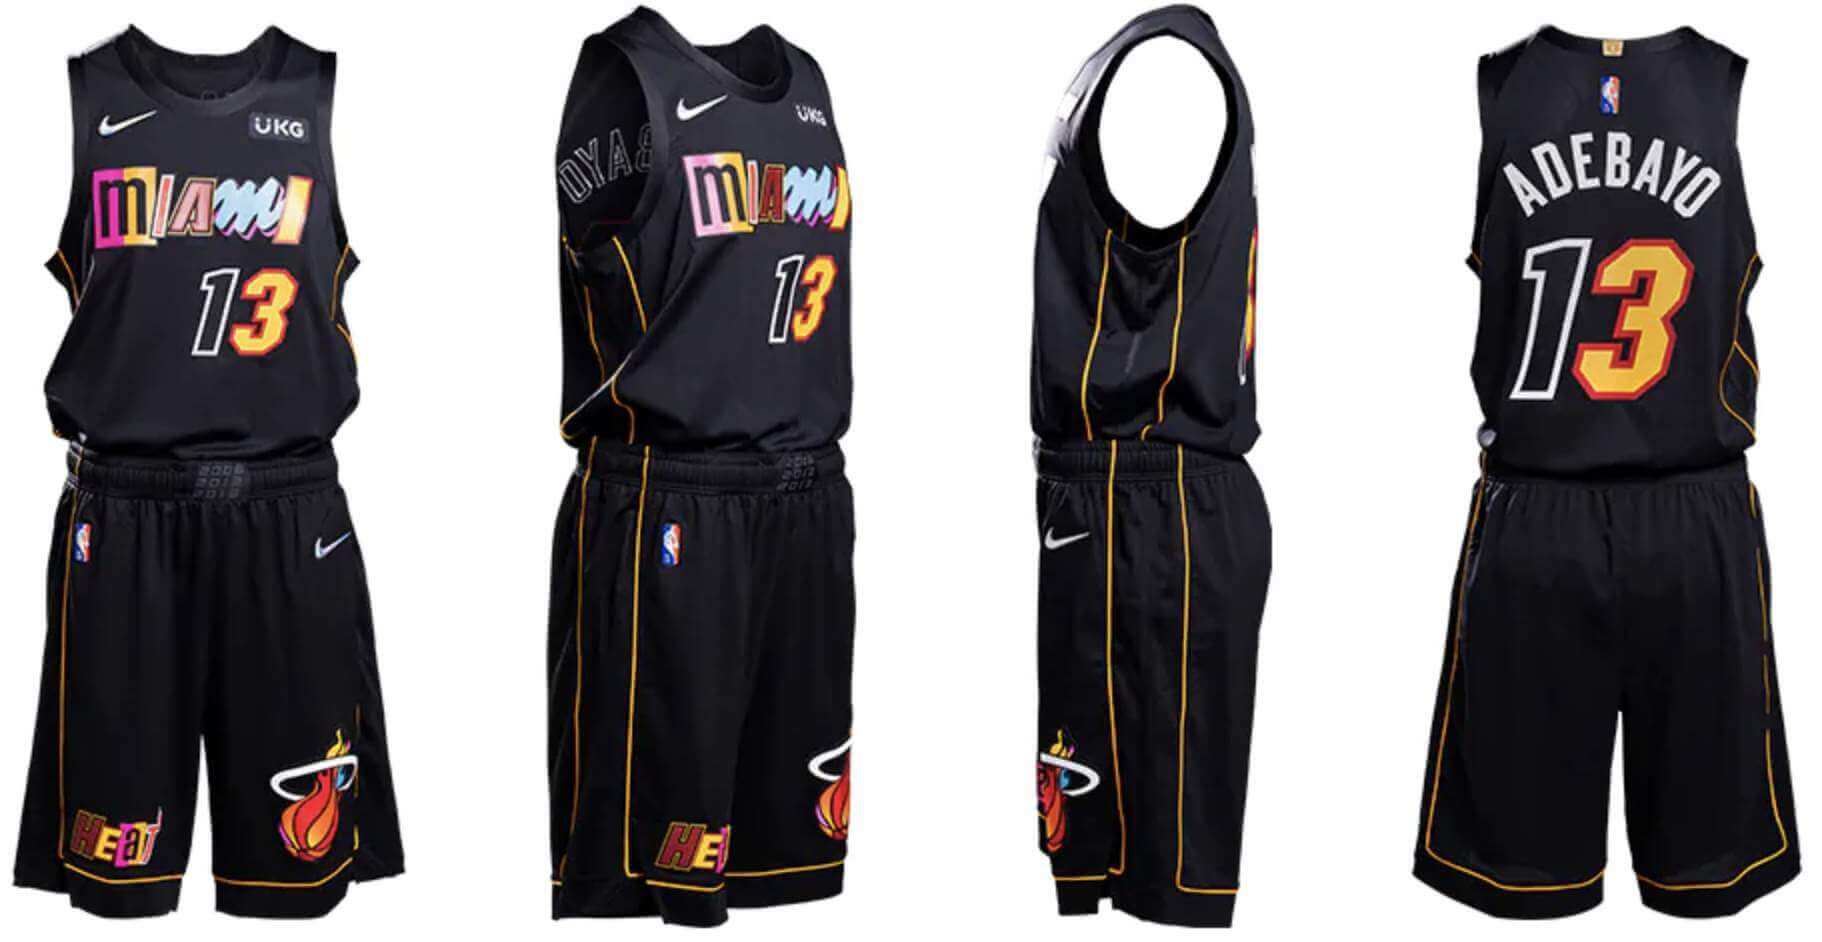 76ers Unveil Spectrum-Themed 2021-2022 NBA City Edition Uniforms